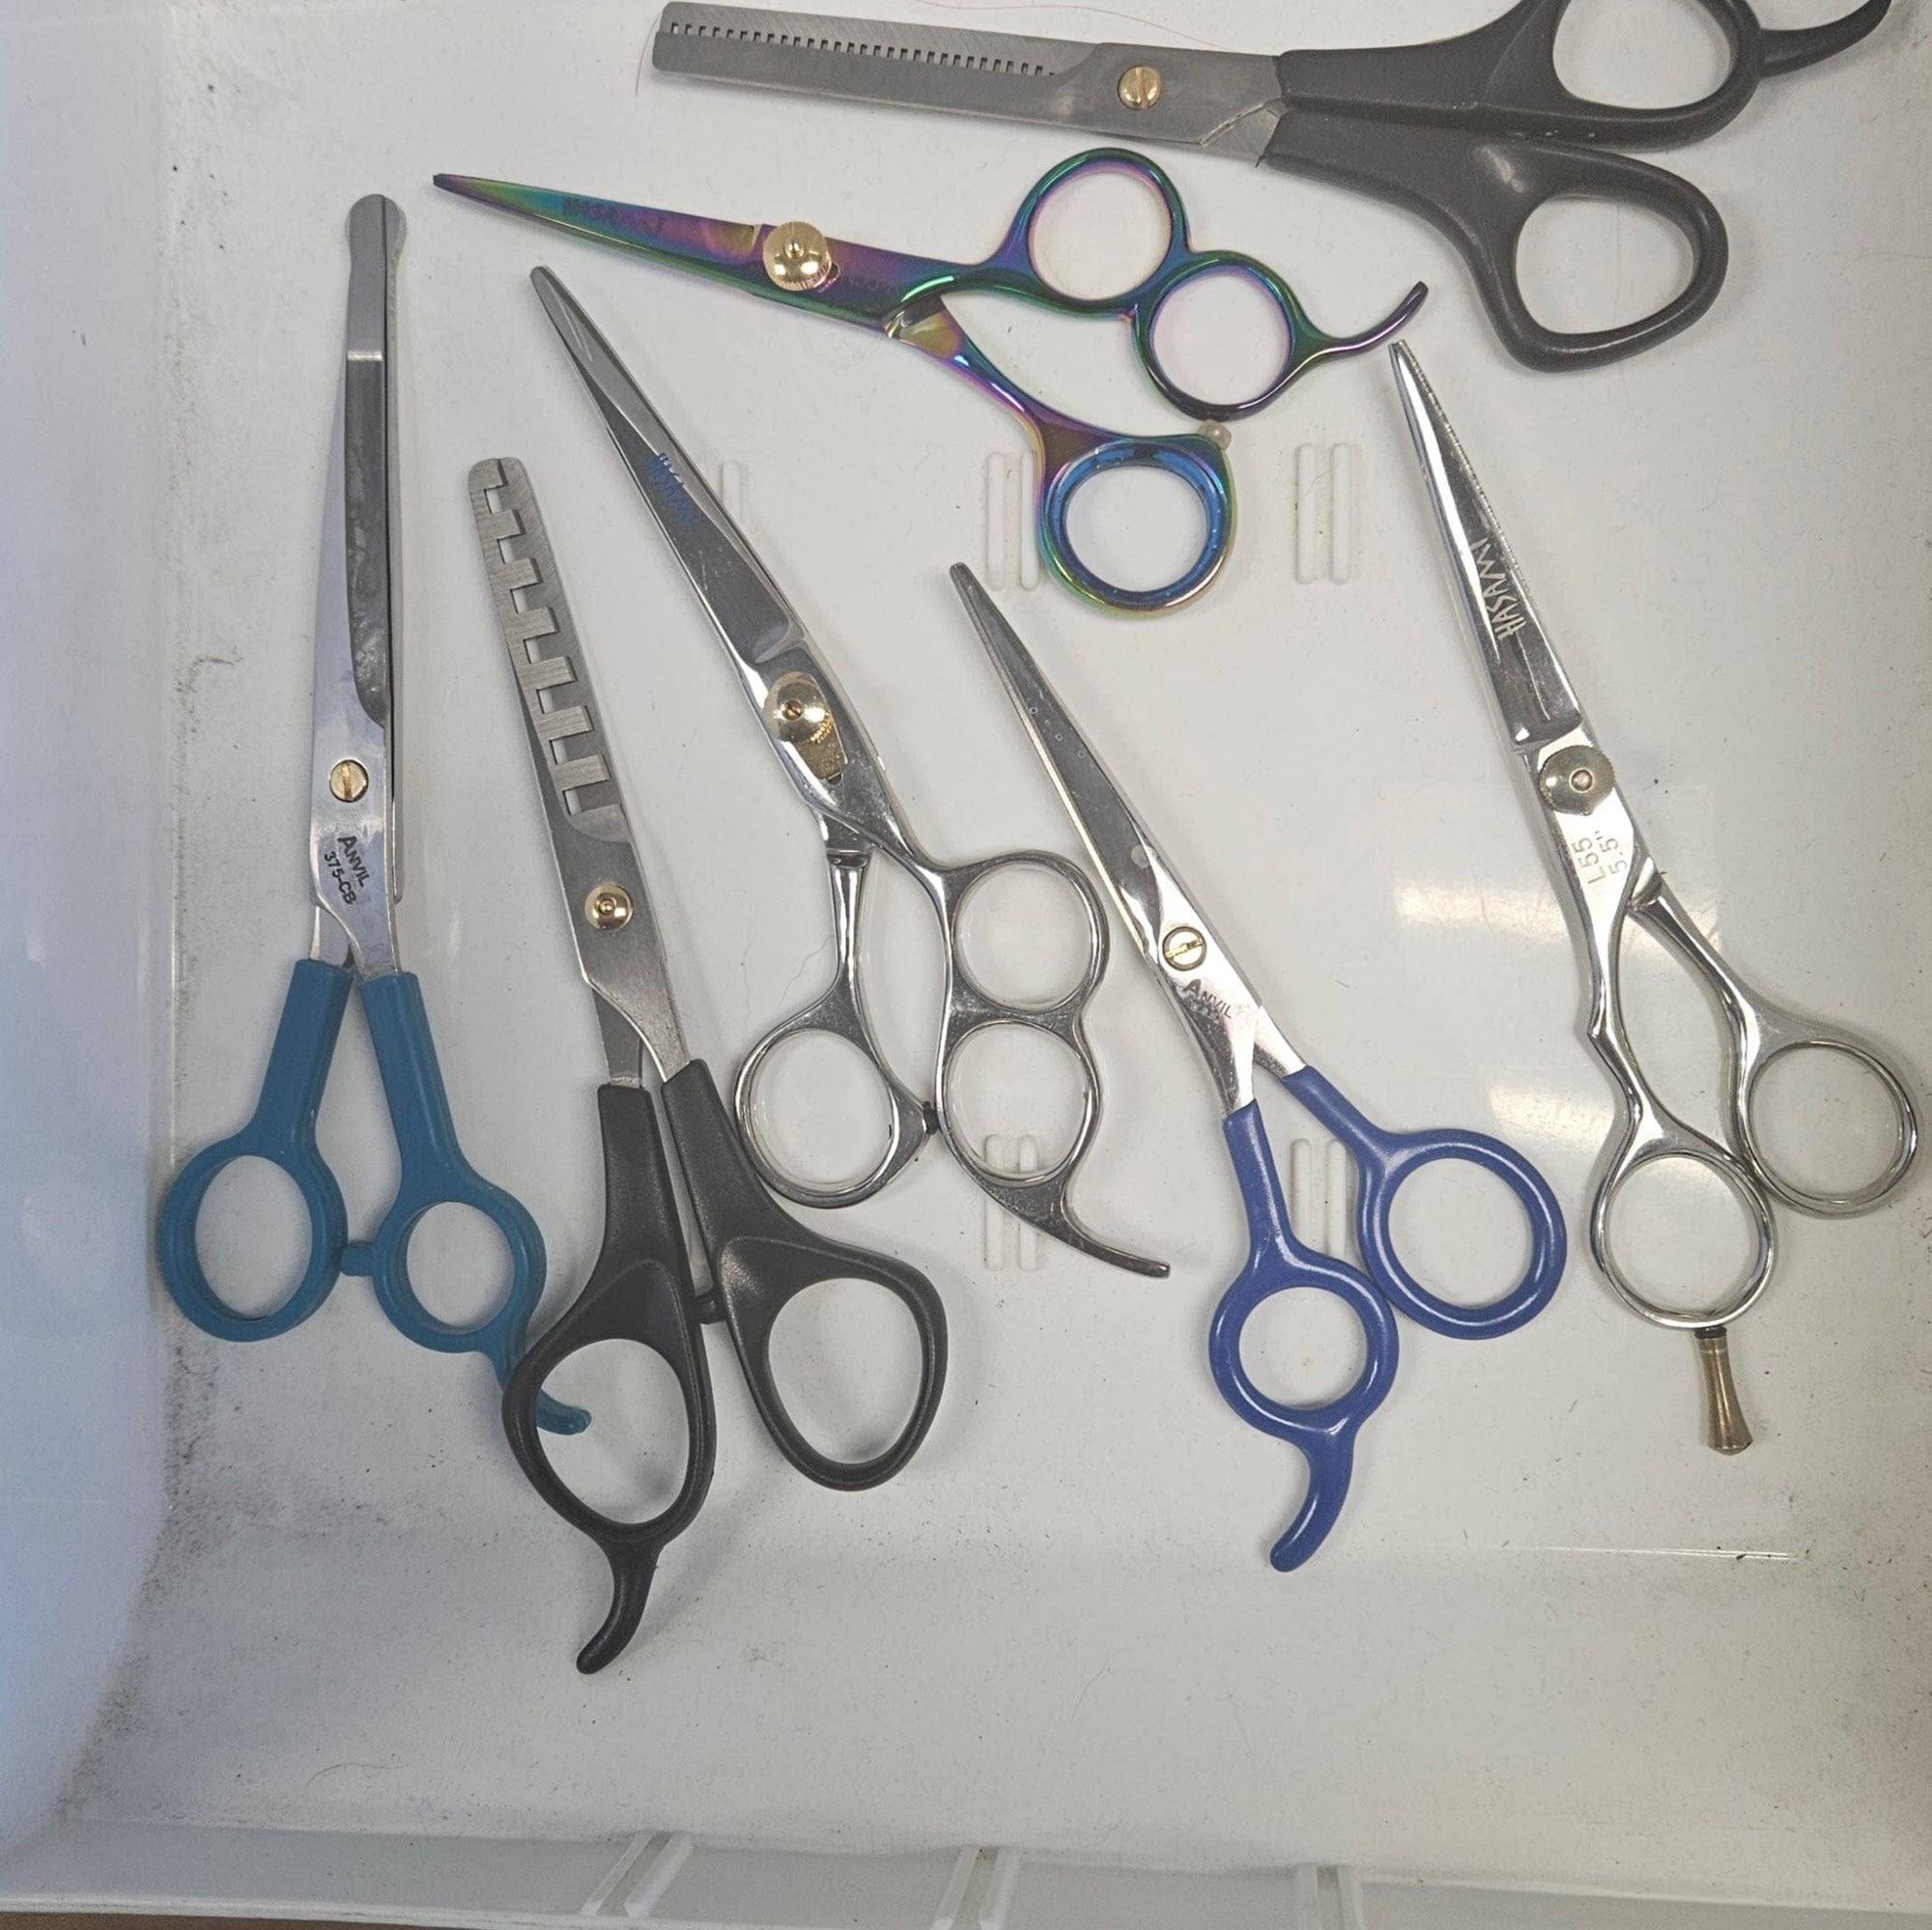 Training Scissors, 450+ Favorites Under $10